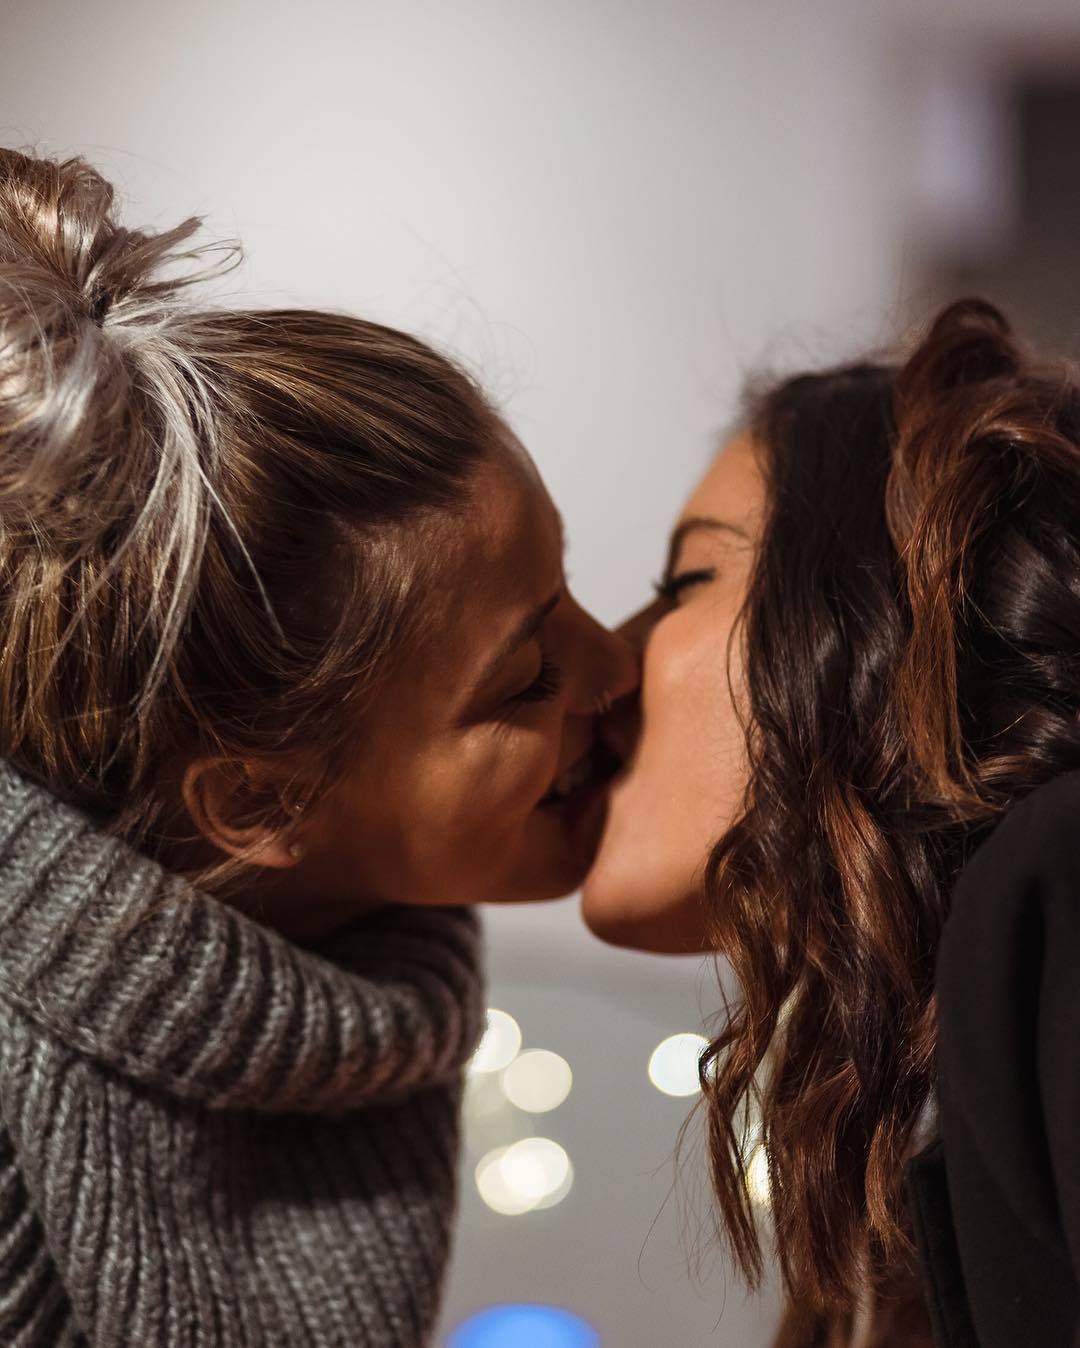 6 lesbian. Любовь двух женщин. Поцелуй девушек. Девушки целуются. Красивый поцелуй двух девушек.